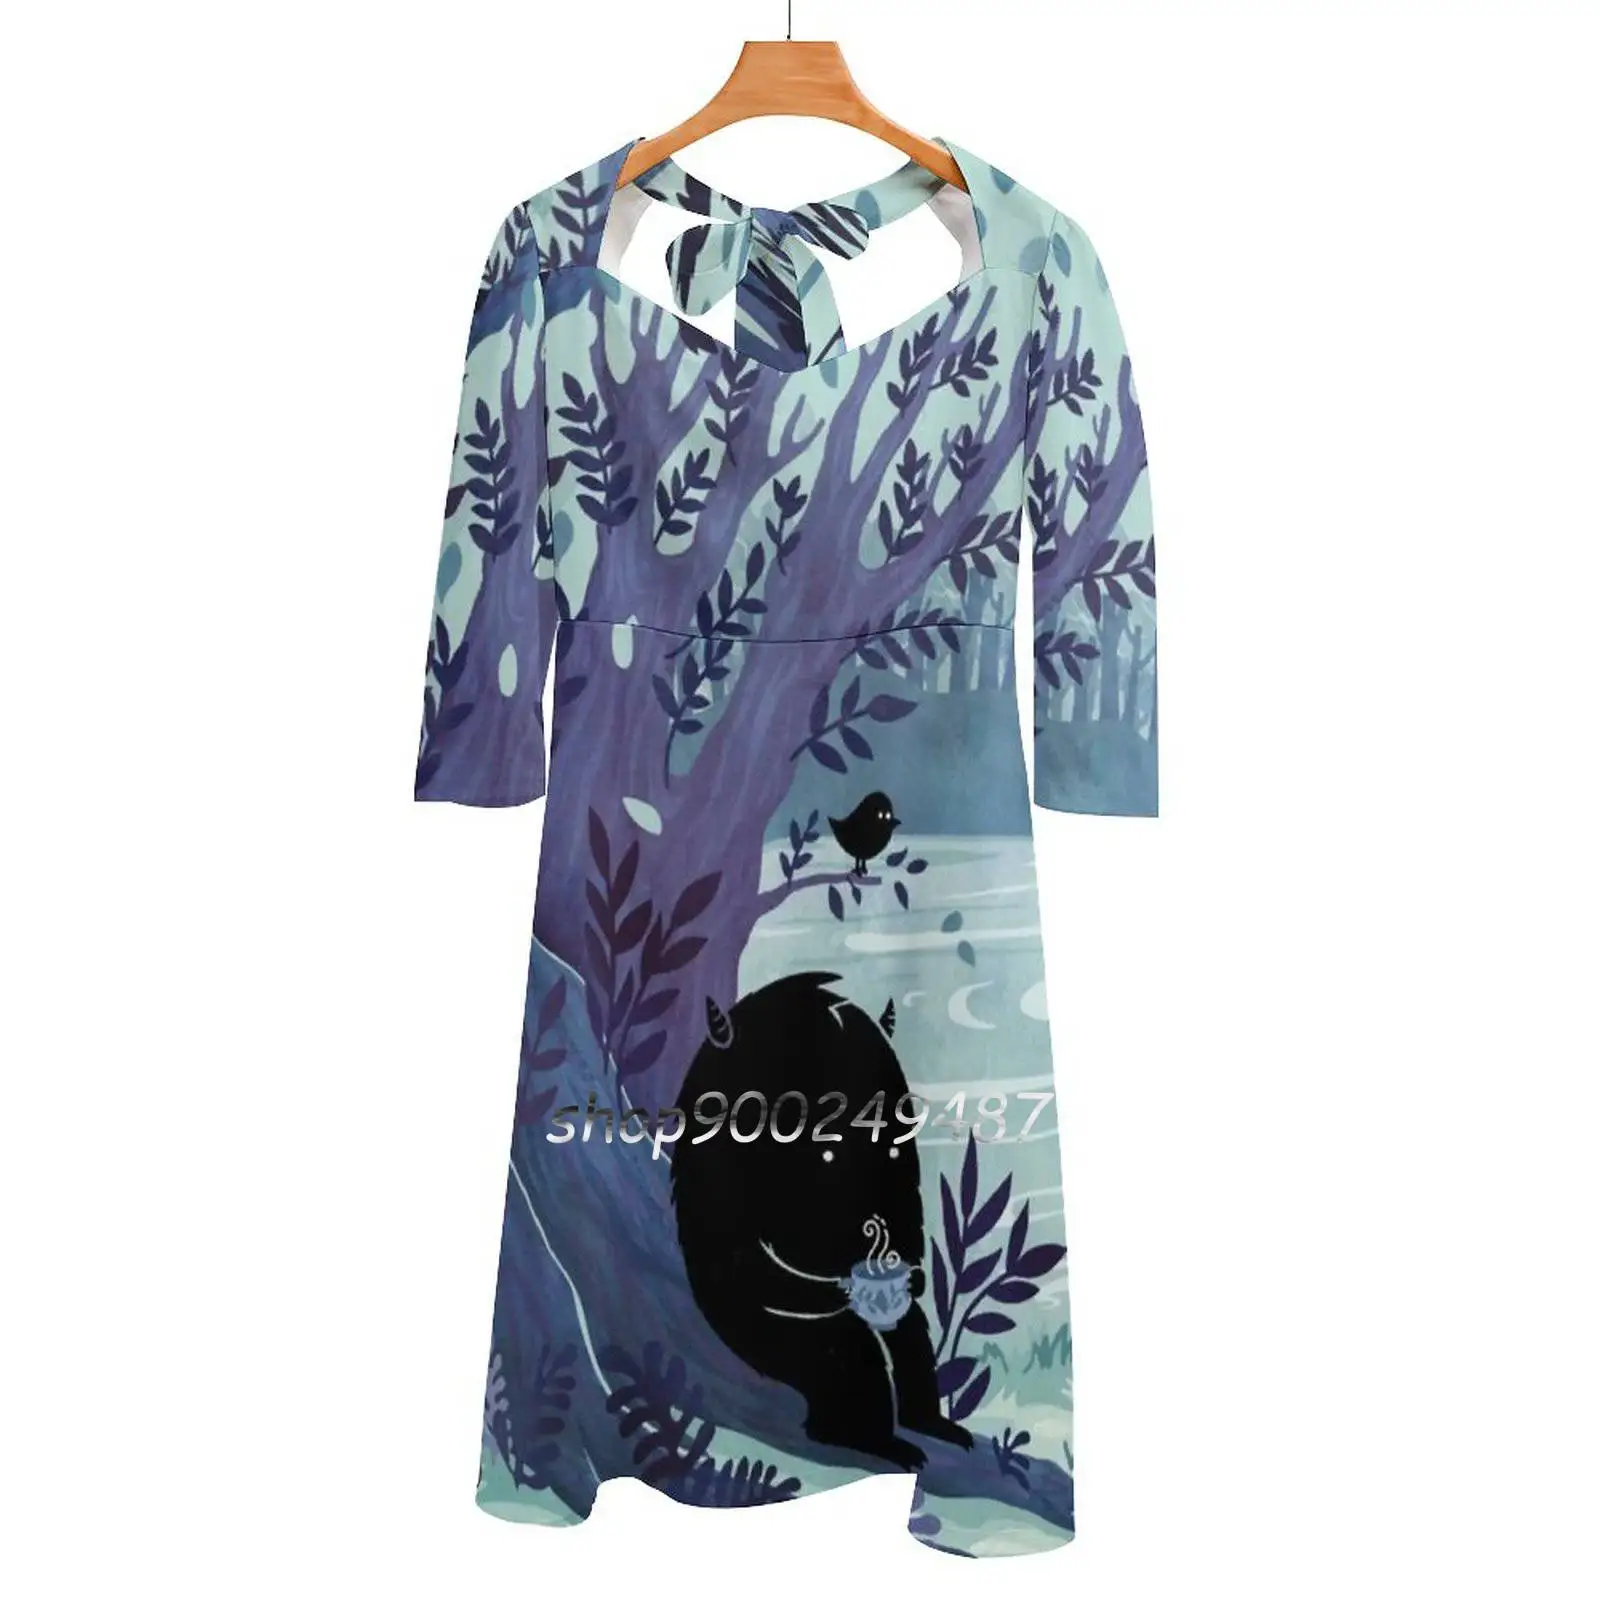 

Женское платье с квадратным вырезом, милое элегантное корейское платье с изображением чаепития, монстра, дерева, леса